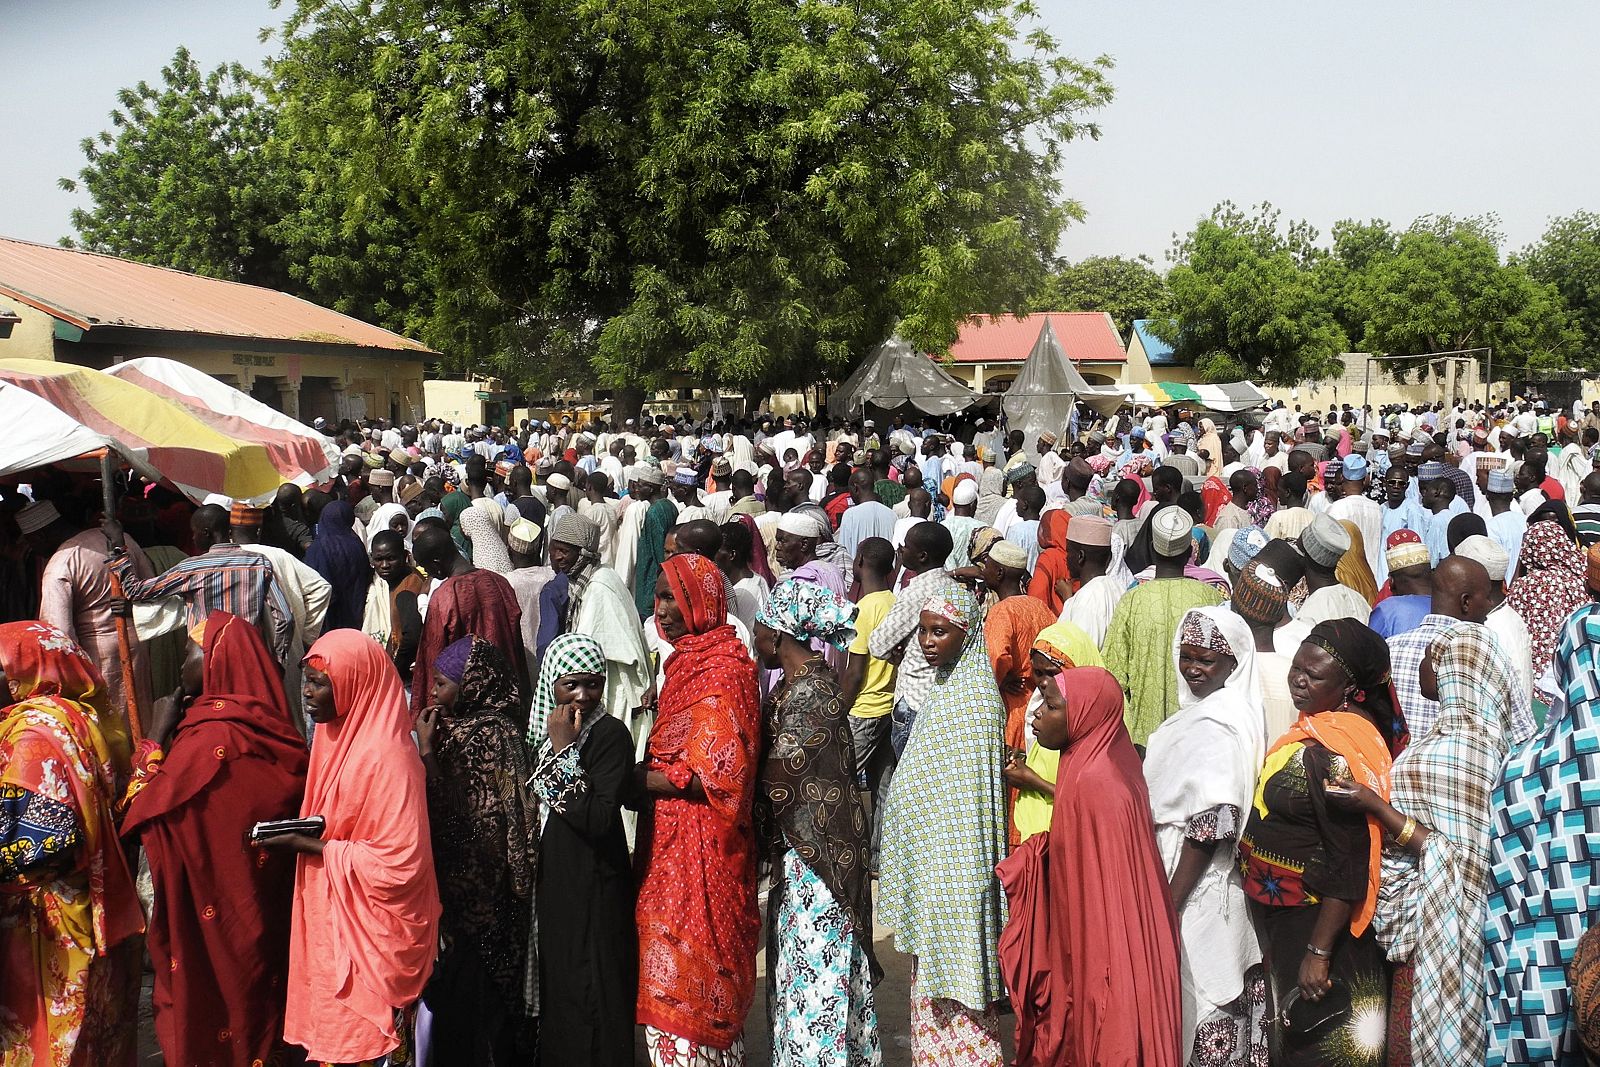 Desplazados nigerianos en el campo de Maiduguri